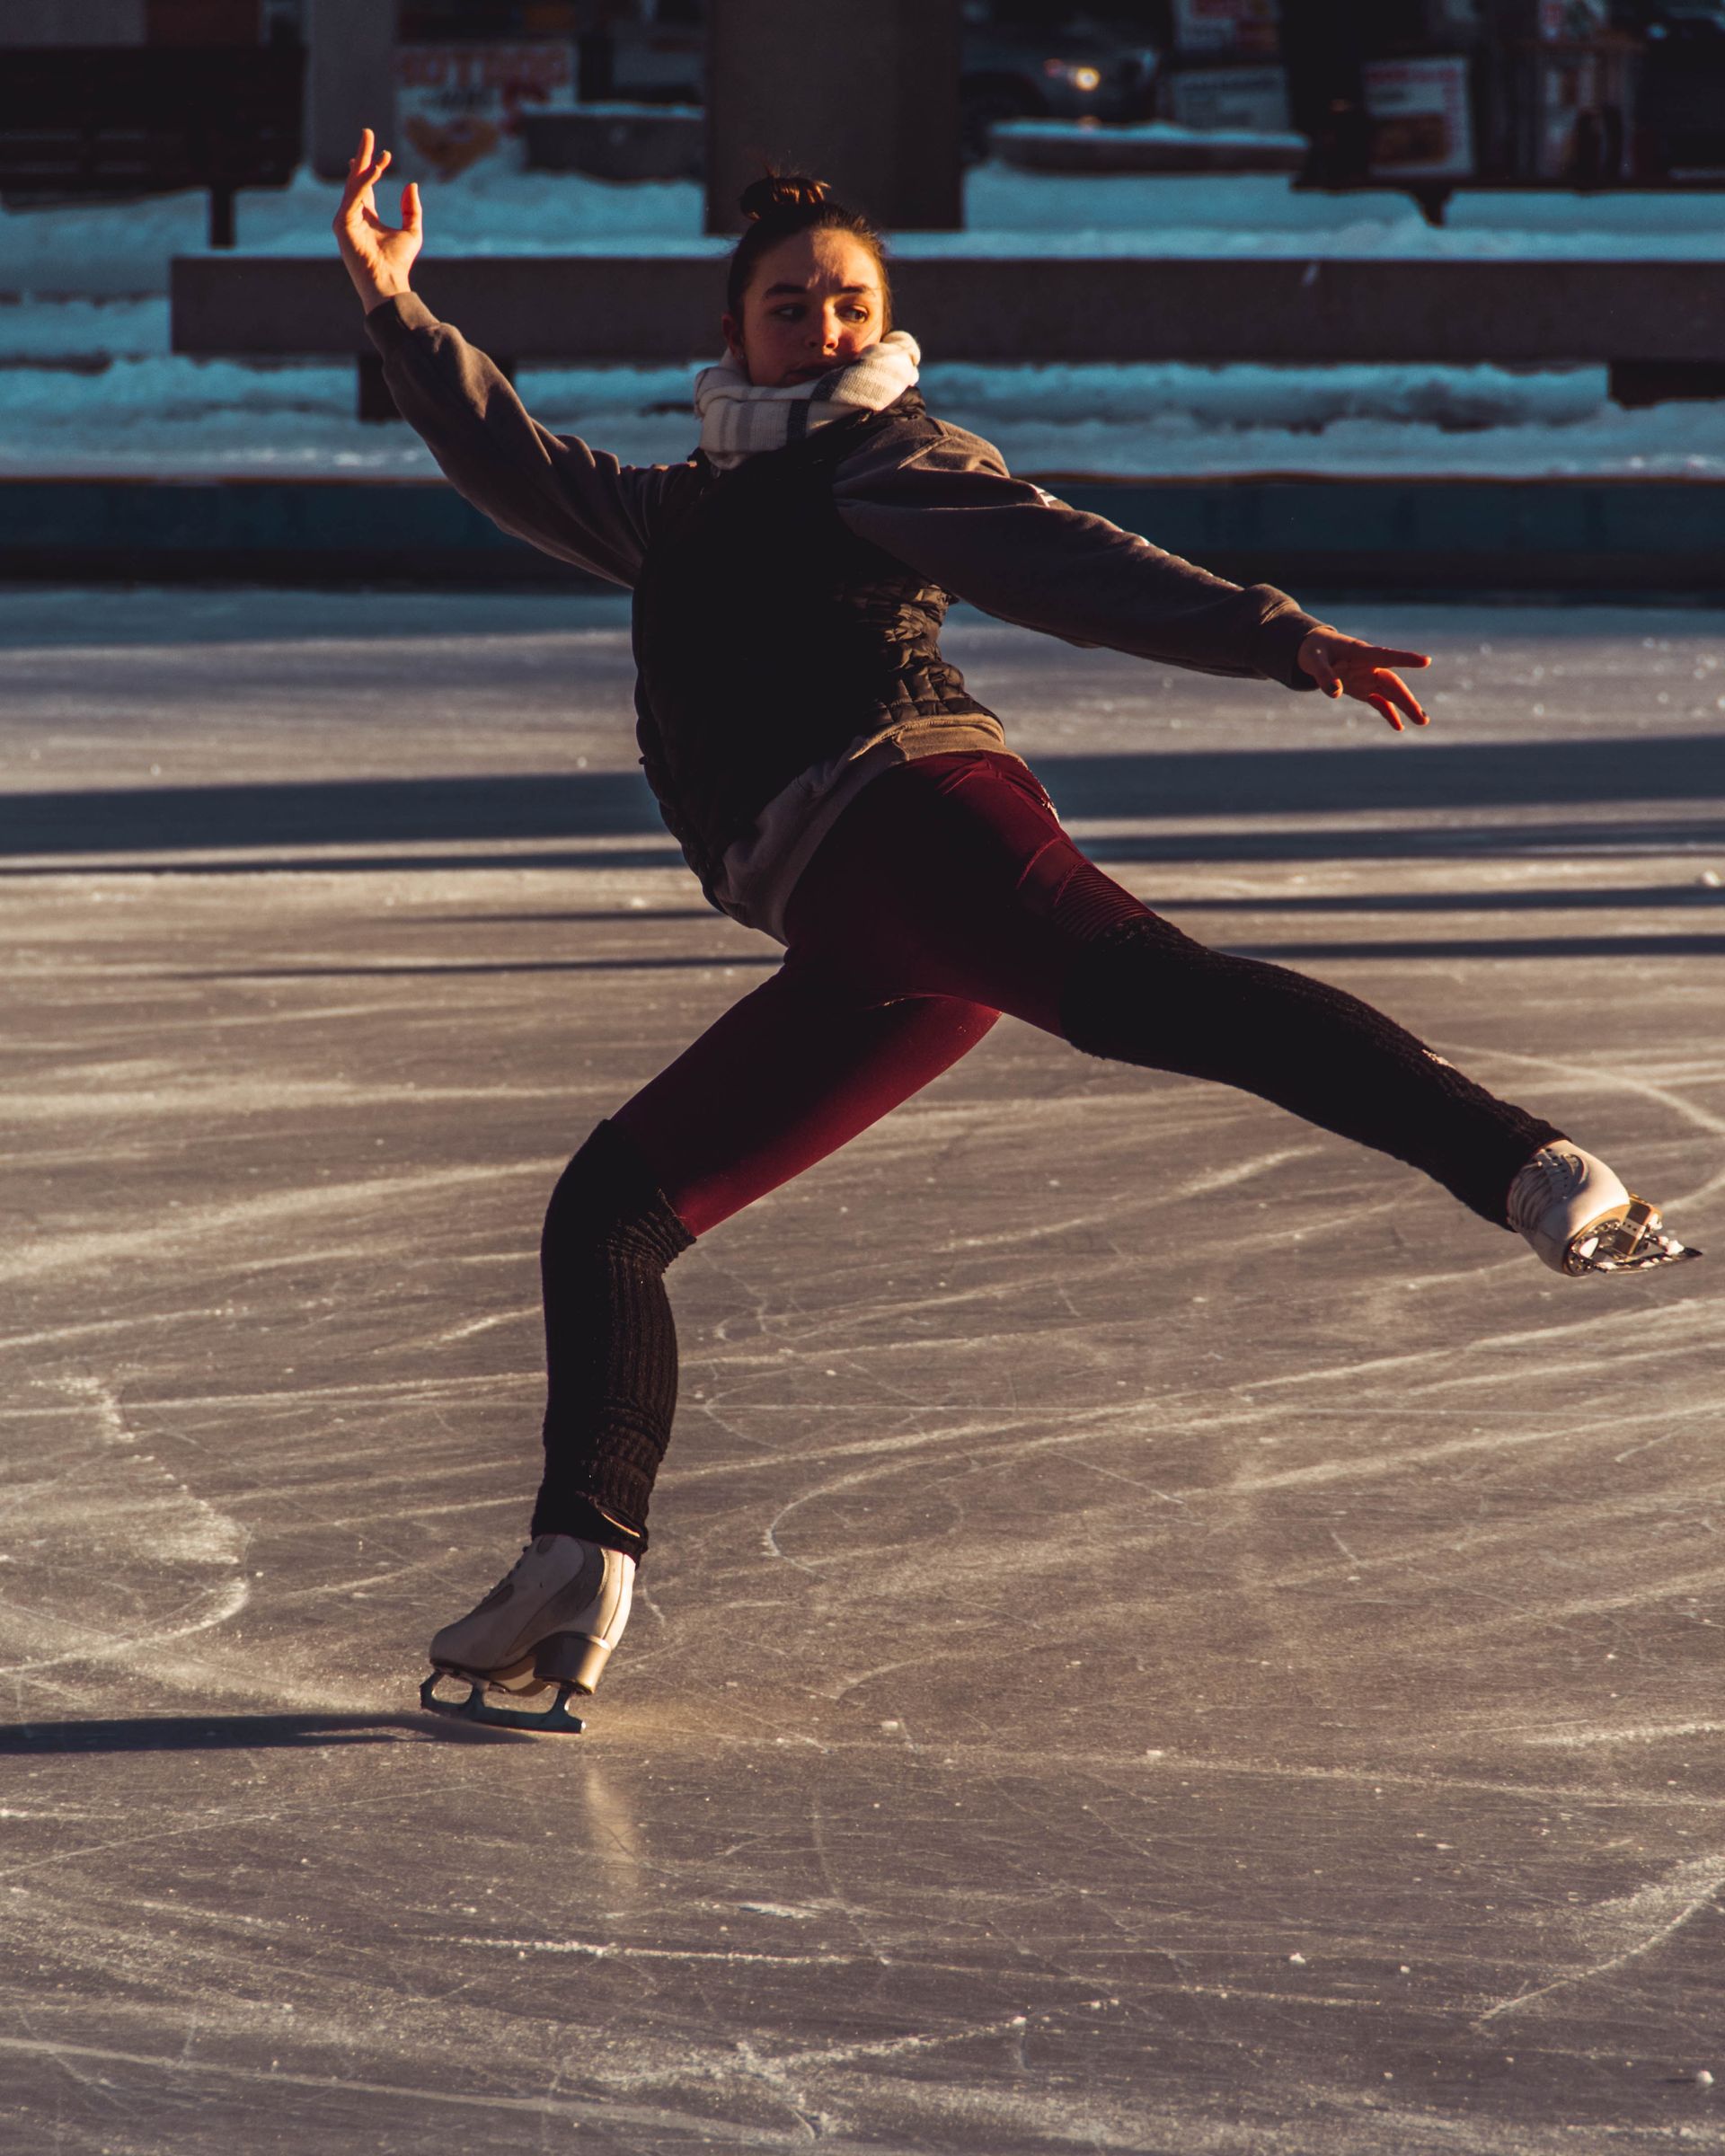 Skating at Place de la République Ice Rink